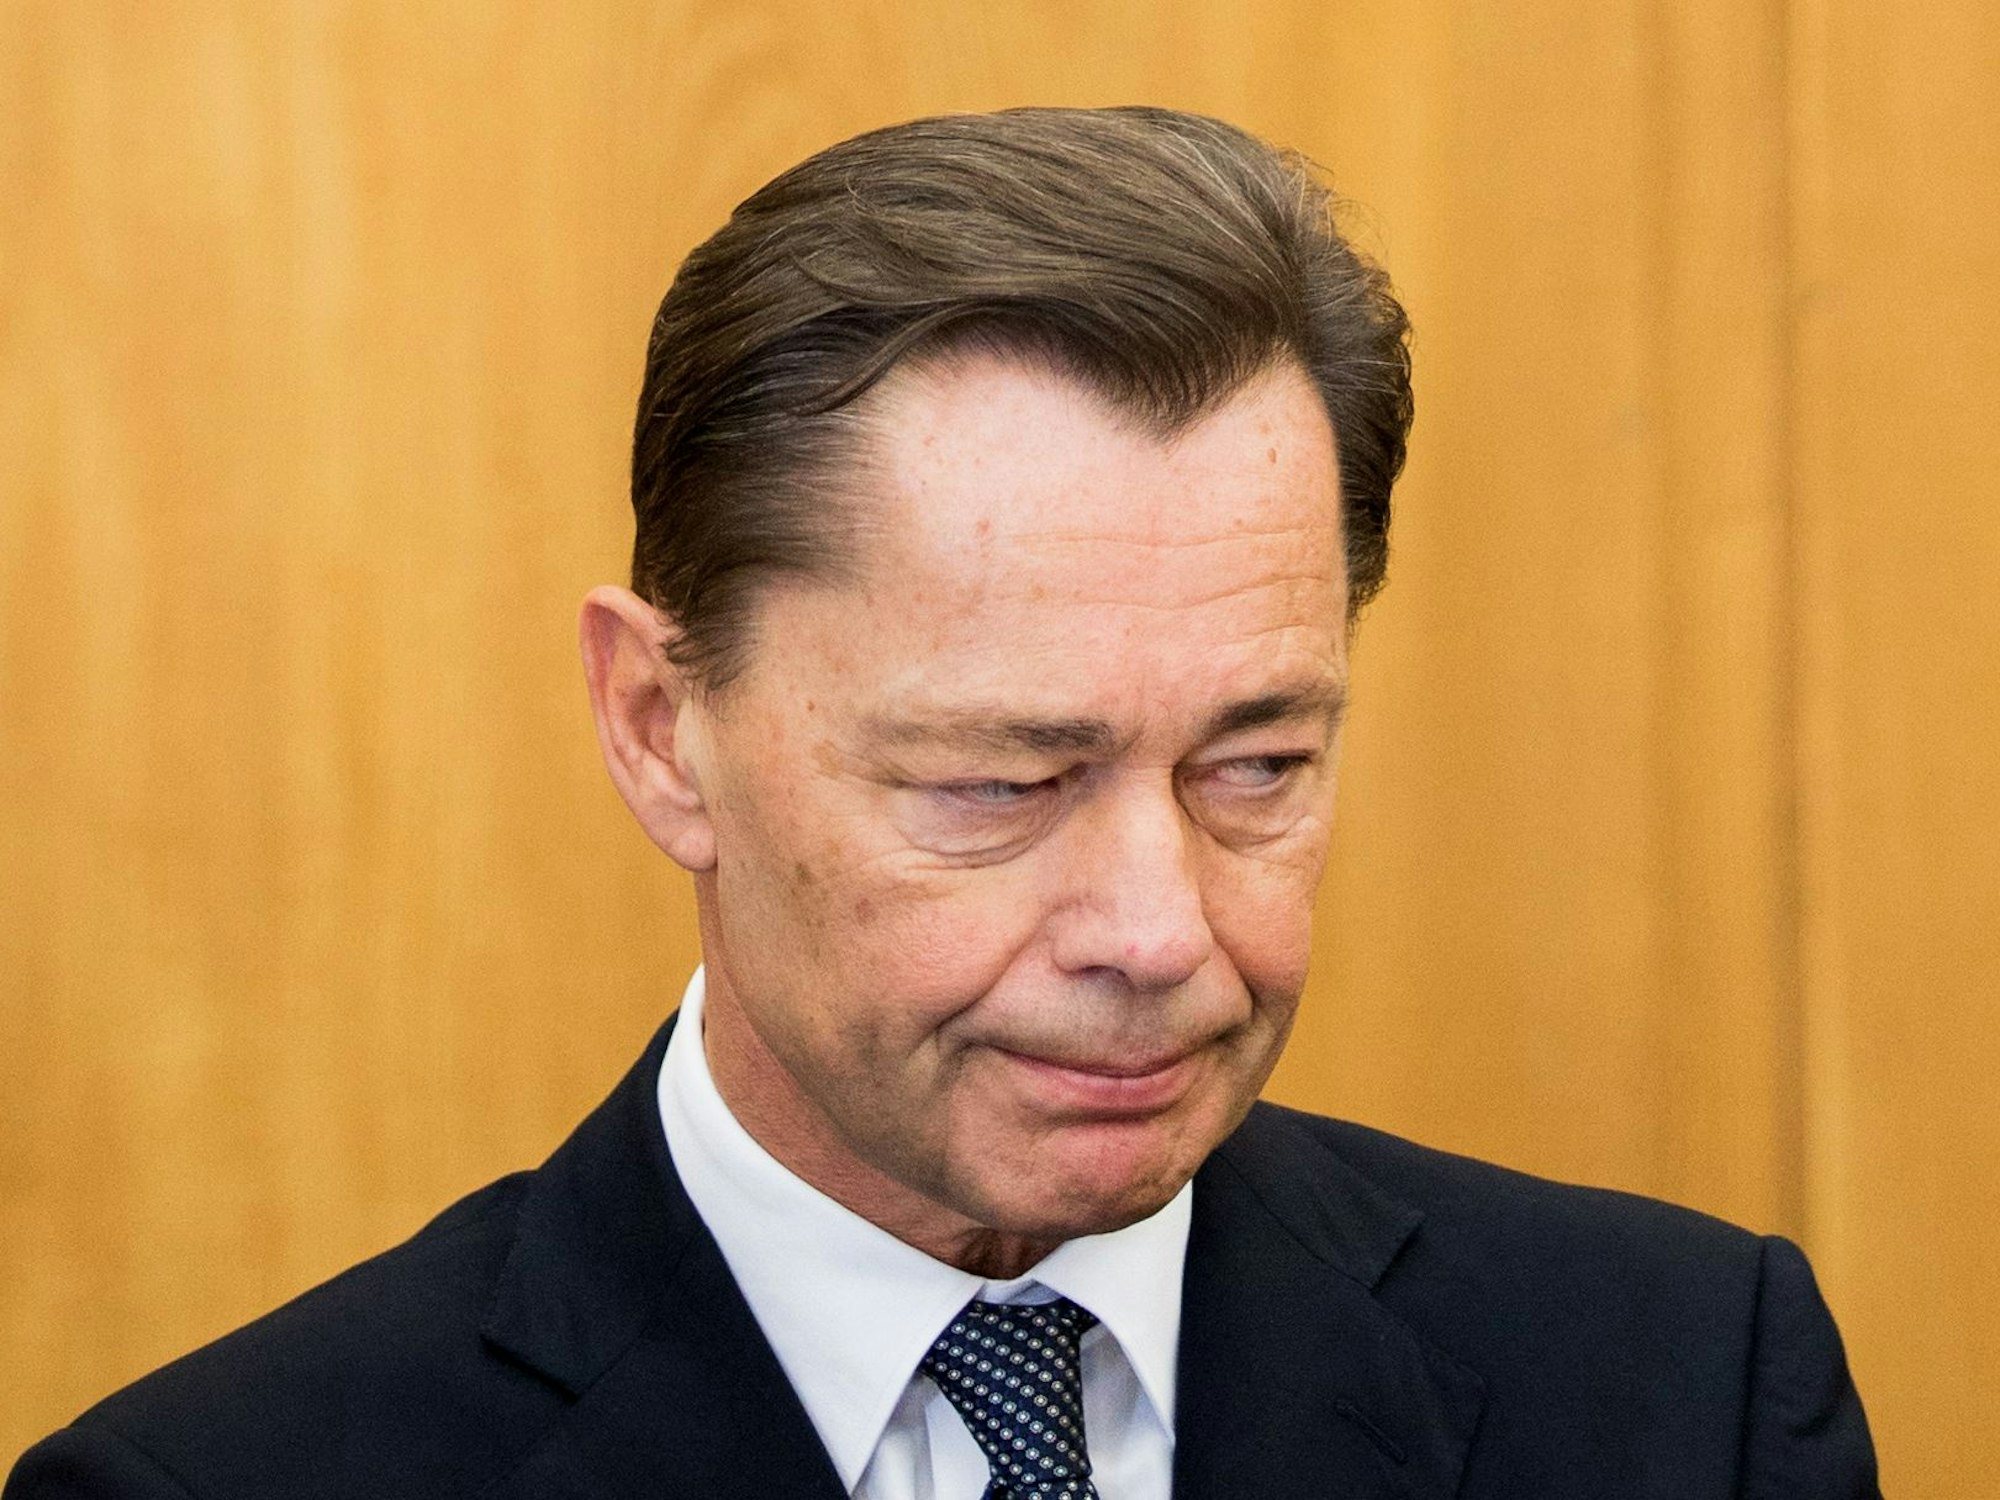 Der ehemalige Vorstandsvorsitzende von Arcandor, Thomas Middelhoff, steht am 14.11.2014 im Landgericht in Essen (Nordrhein-Westfalen).